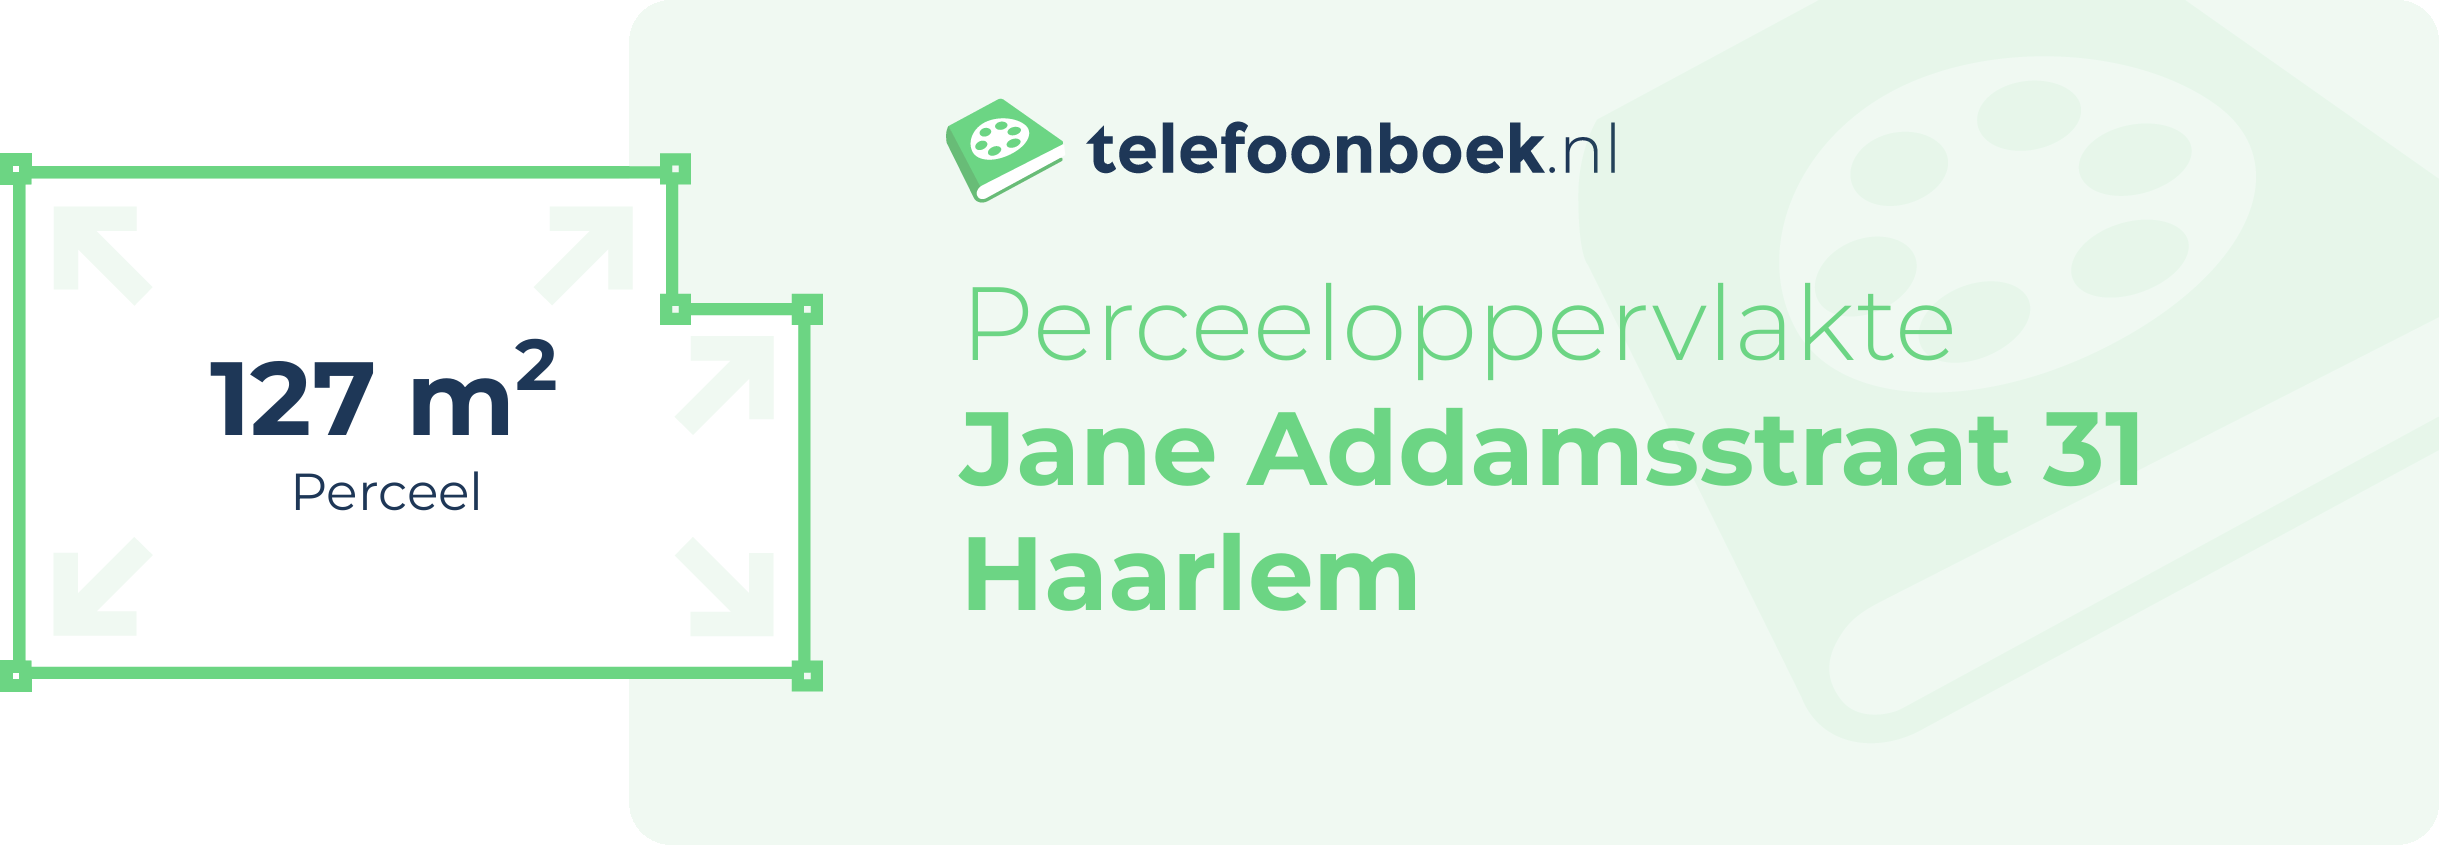 Perceeloppervlakte Jane Addamsstraat 31 Haarlem